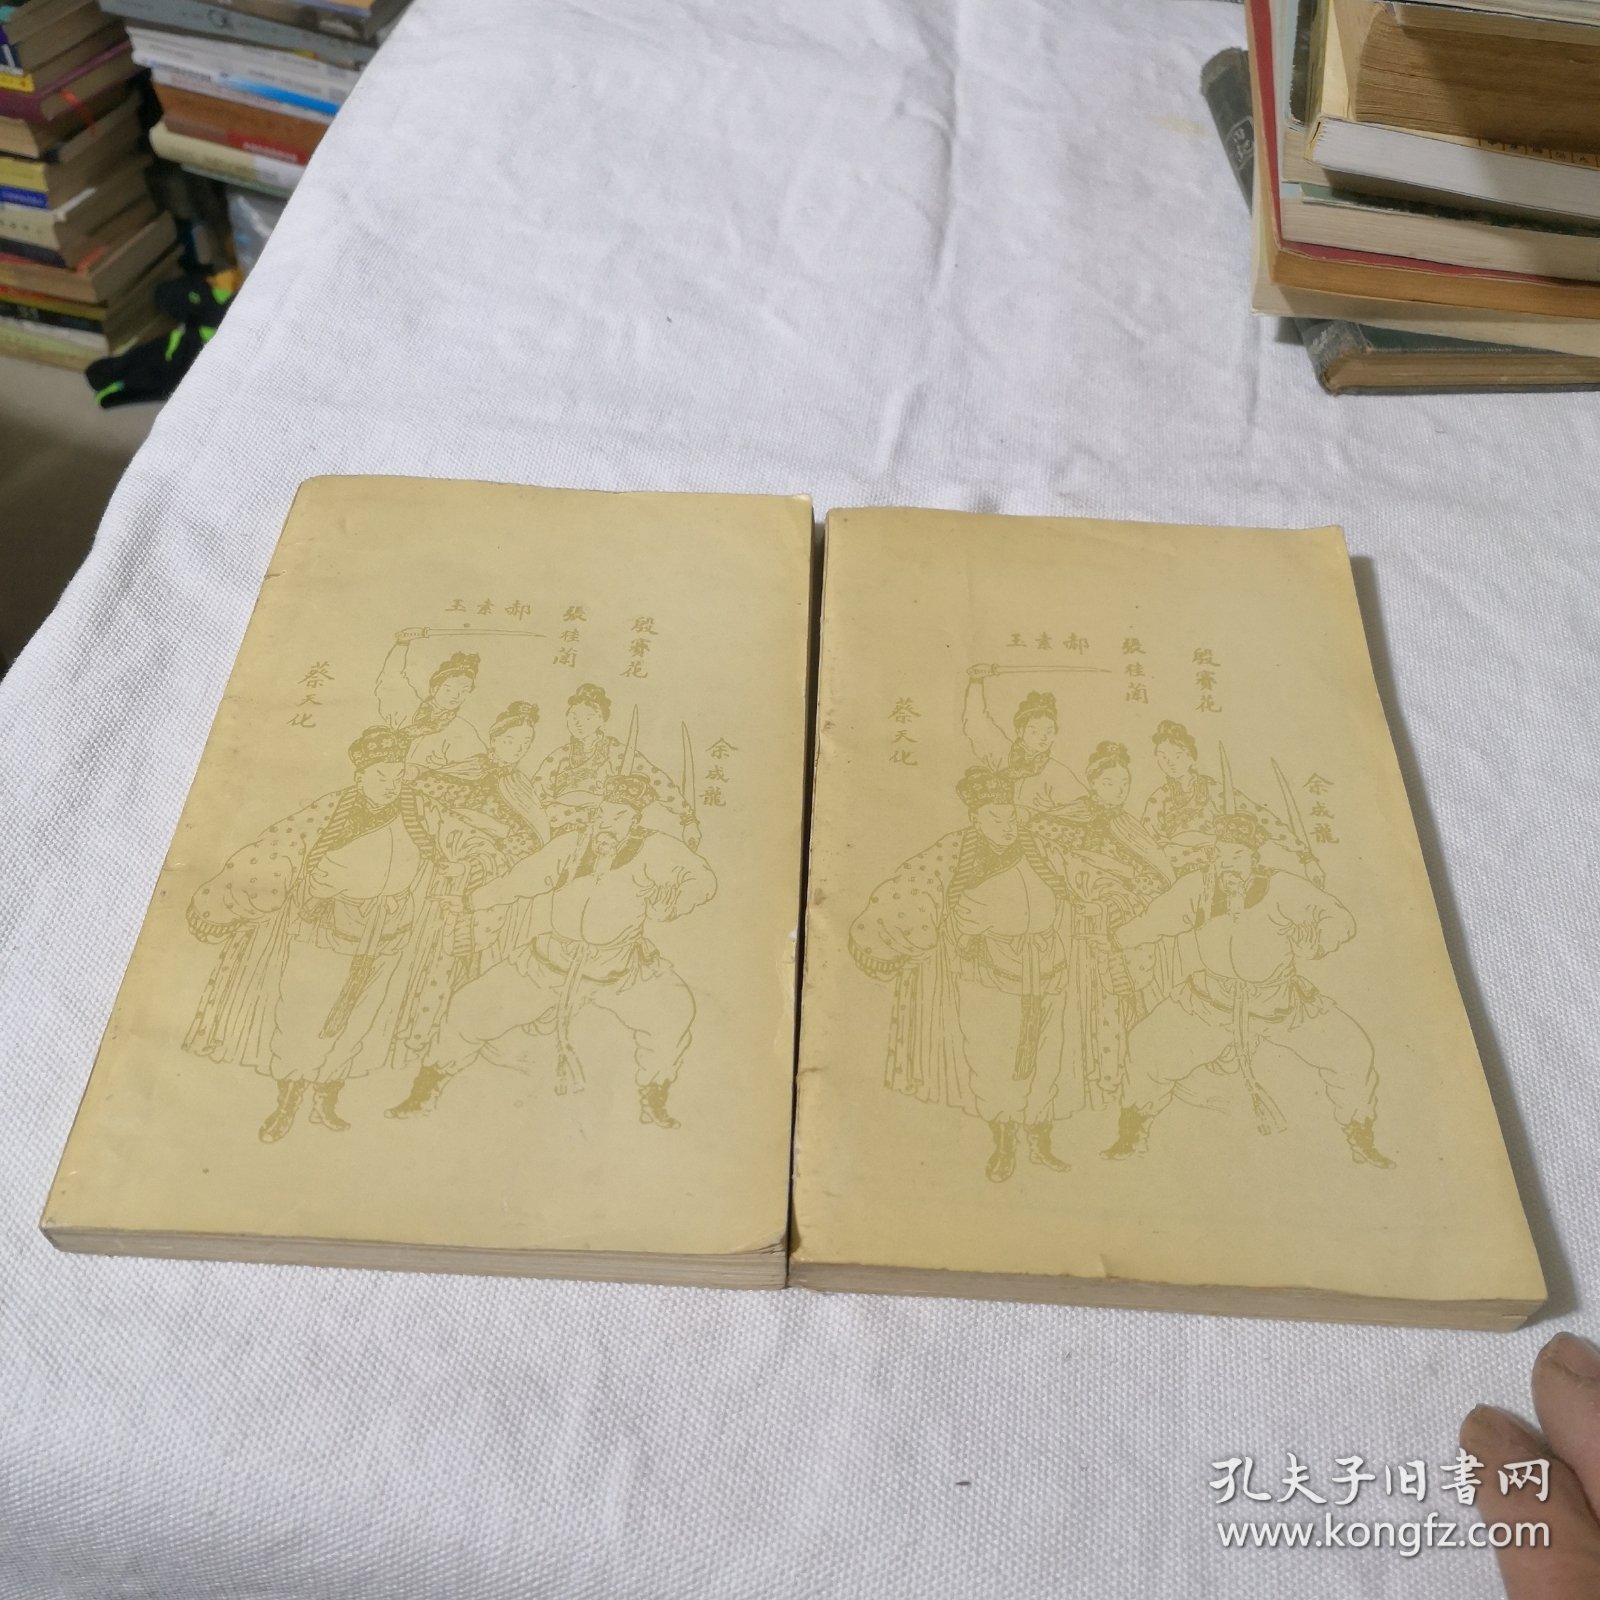 绘图施公案（上下册）合售 据光绪上海广益书局石印本影印